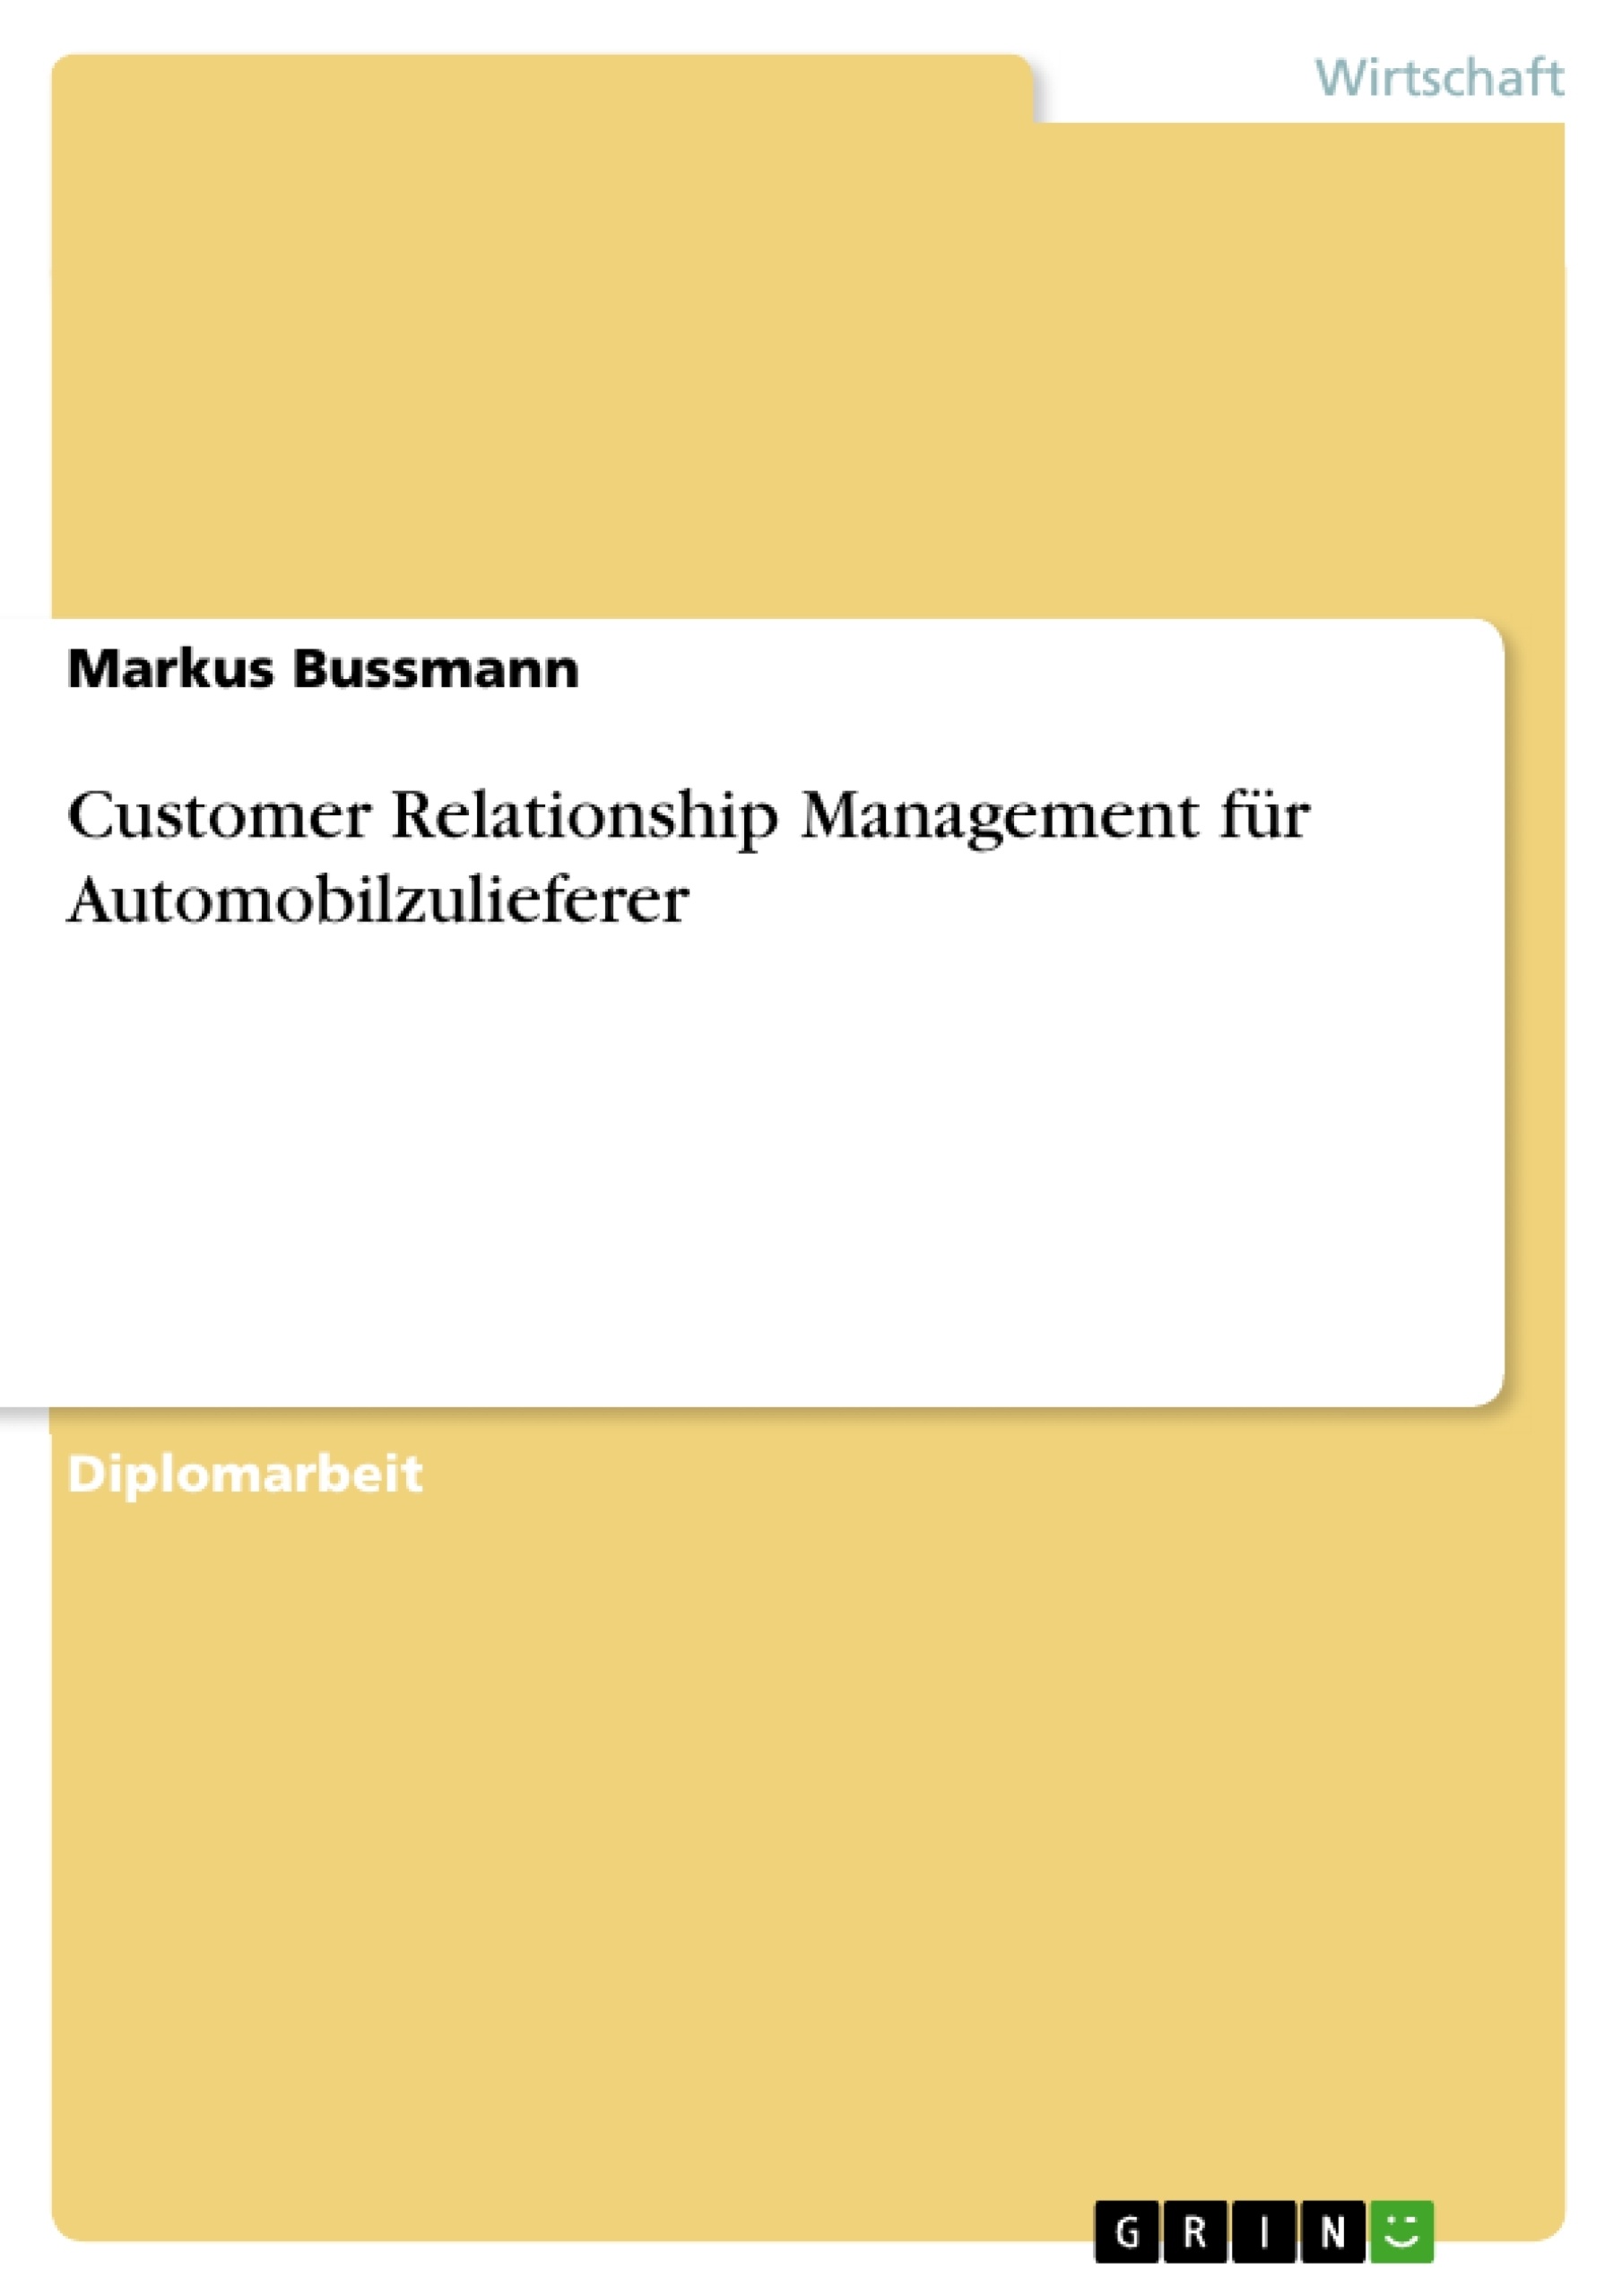 Title: Customer Relationship Management für Automobilzulieferer